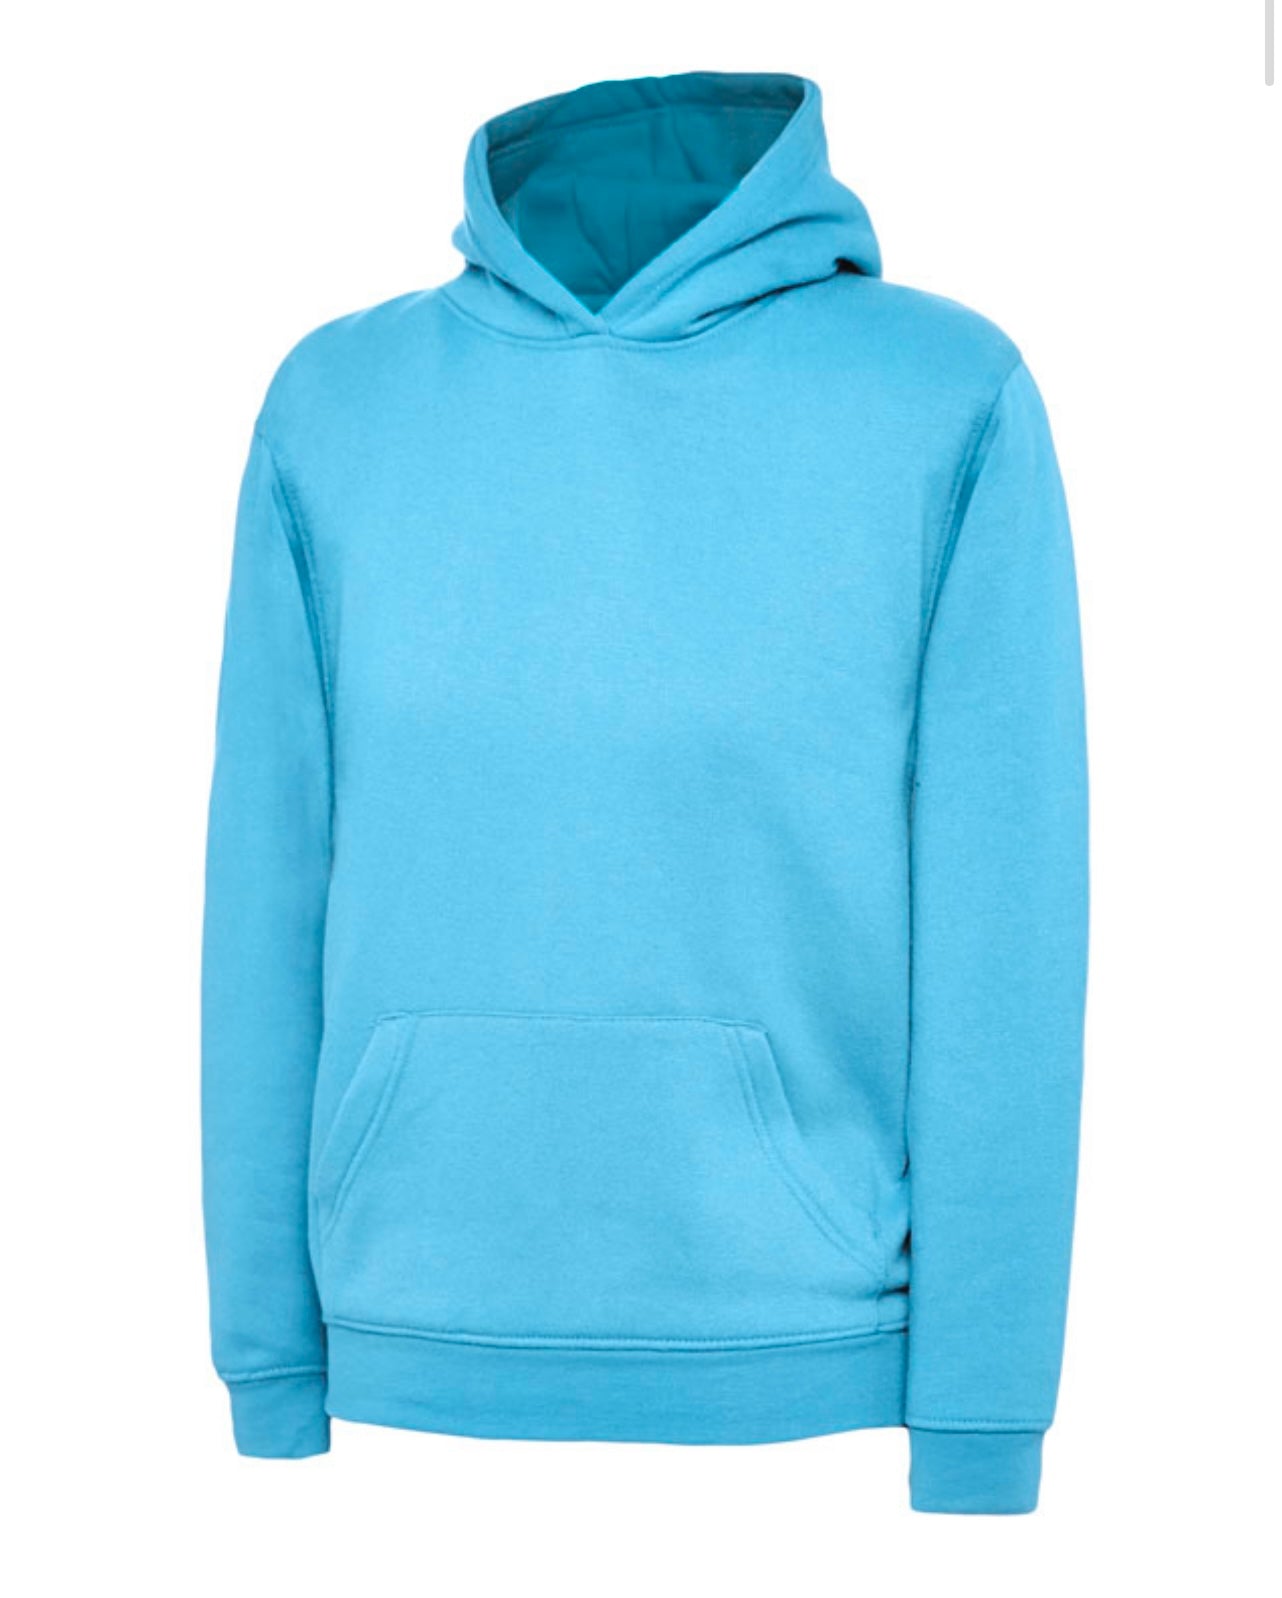 Sky blue hoodie